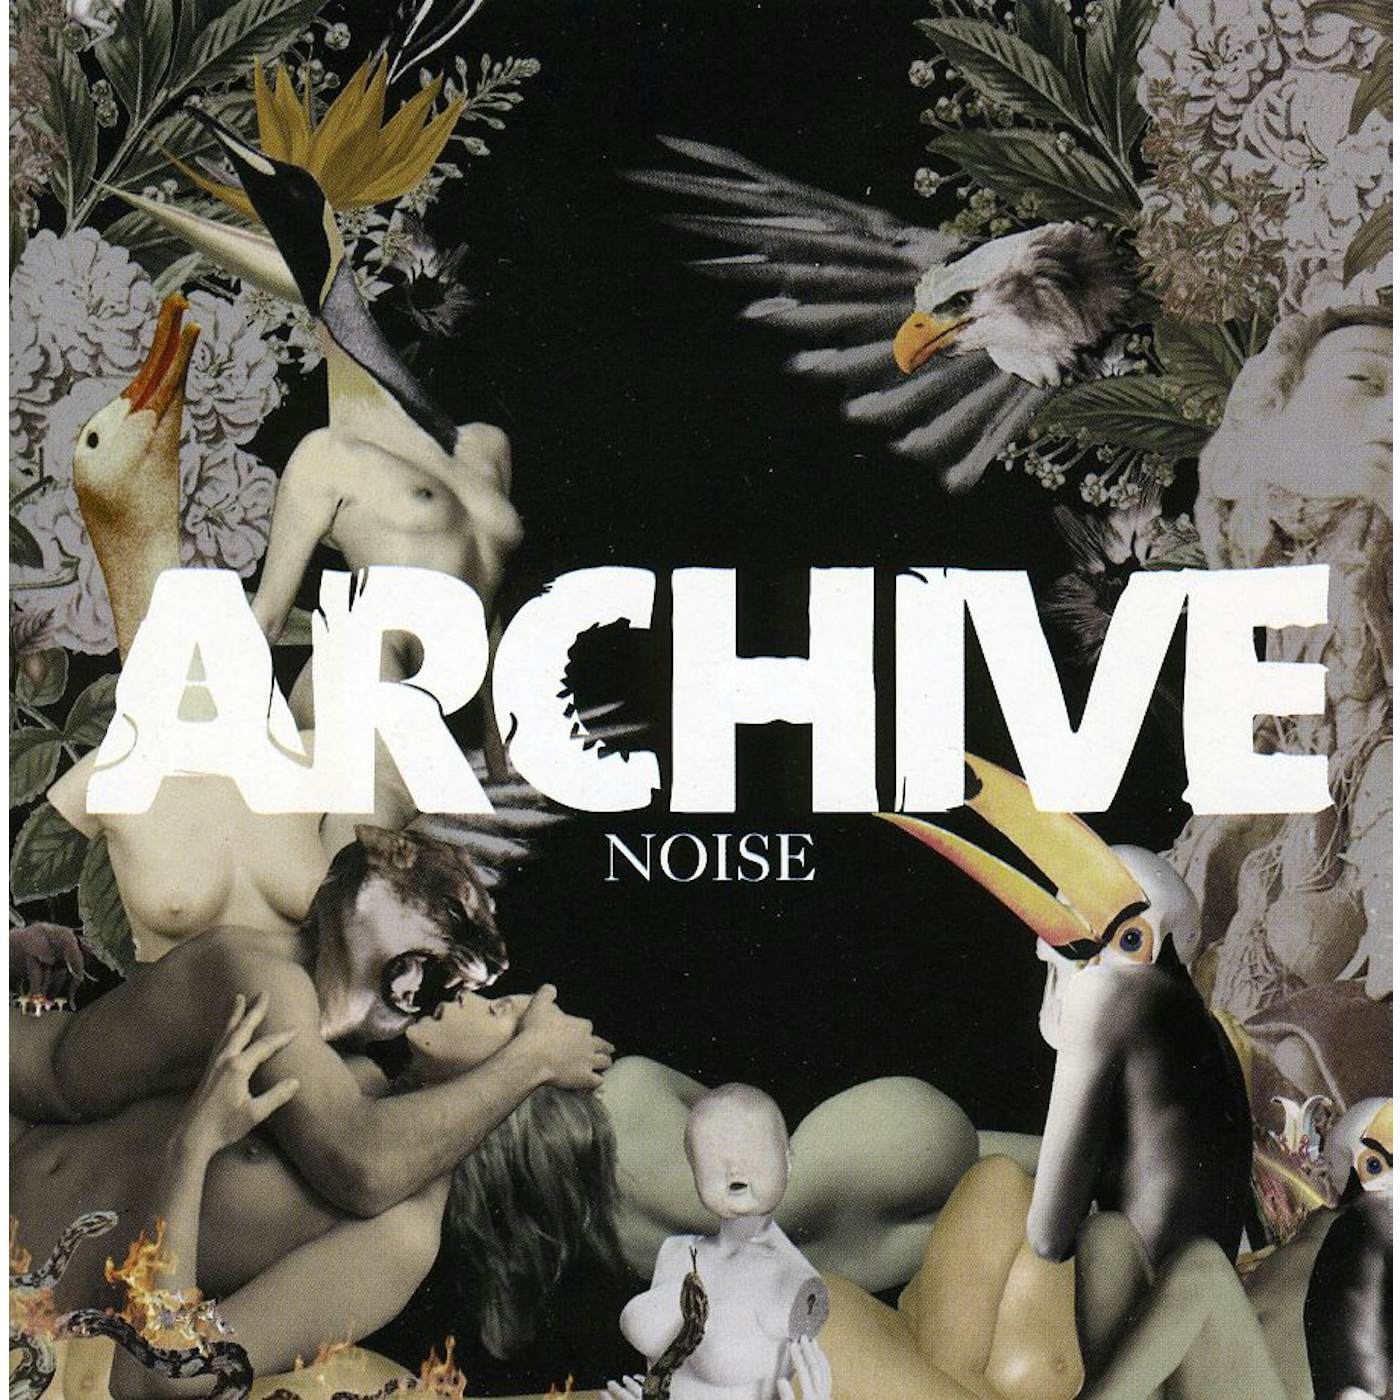 Archive NOISE CD